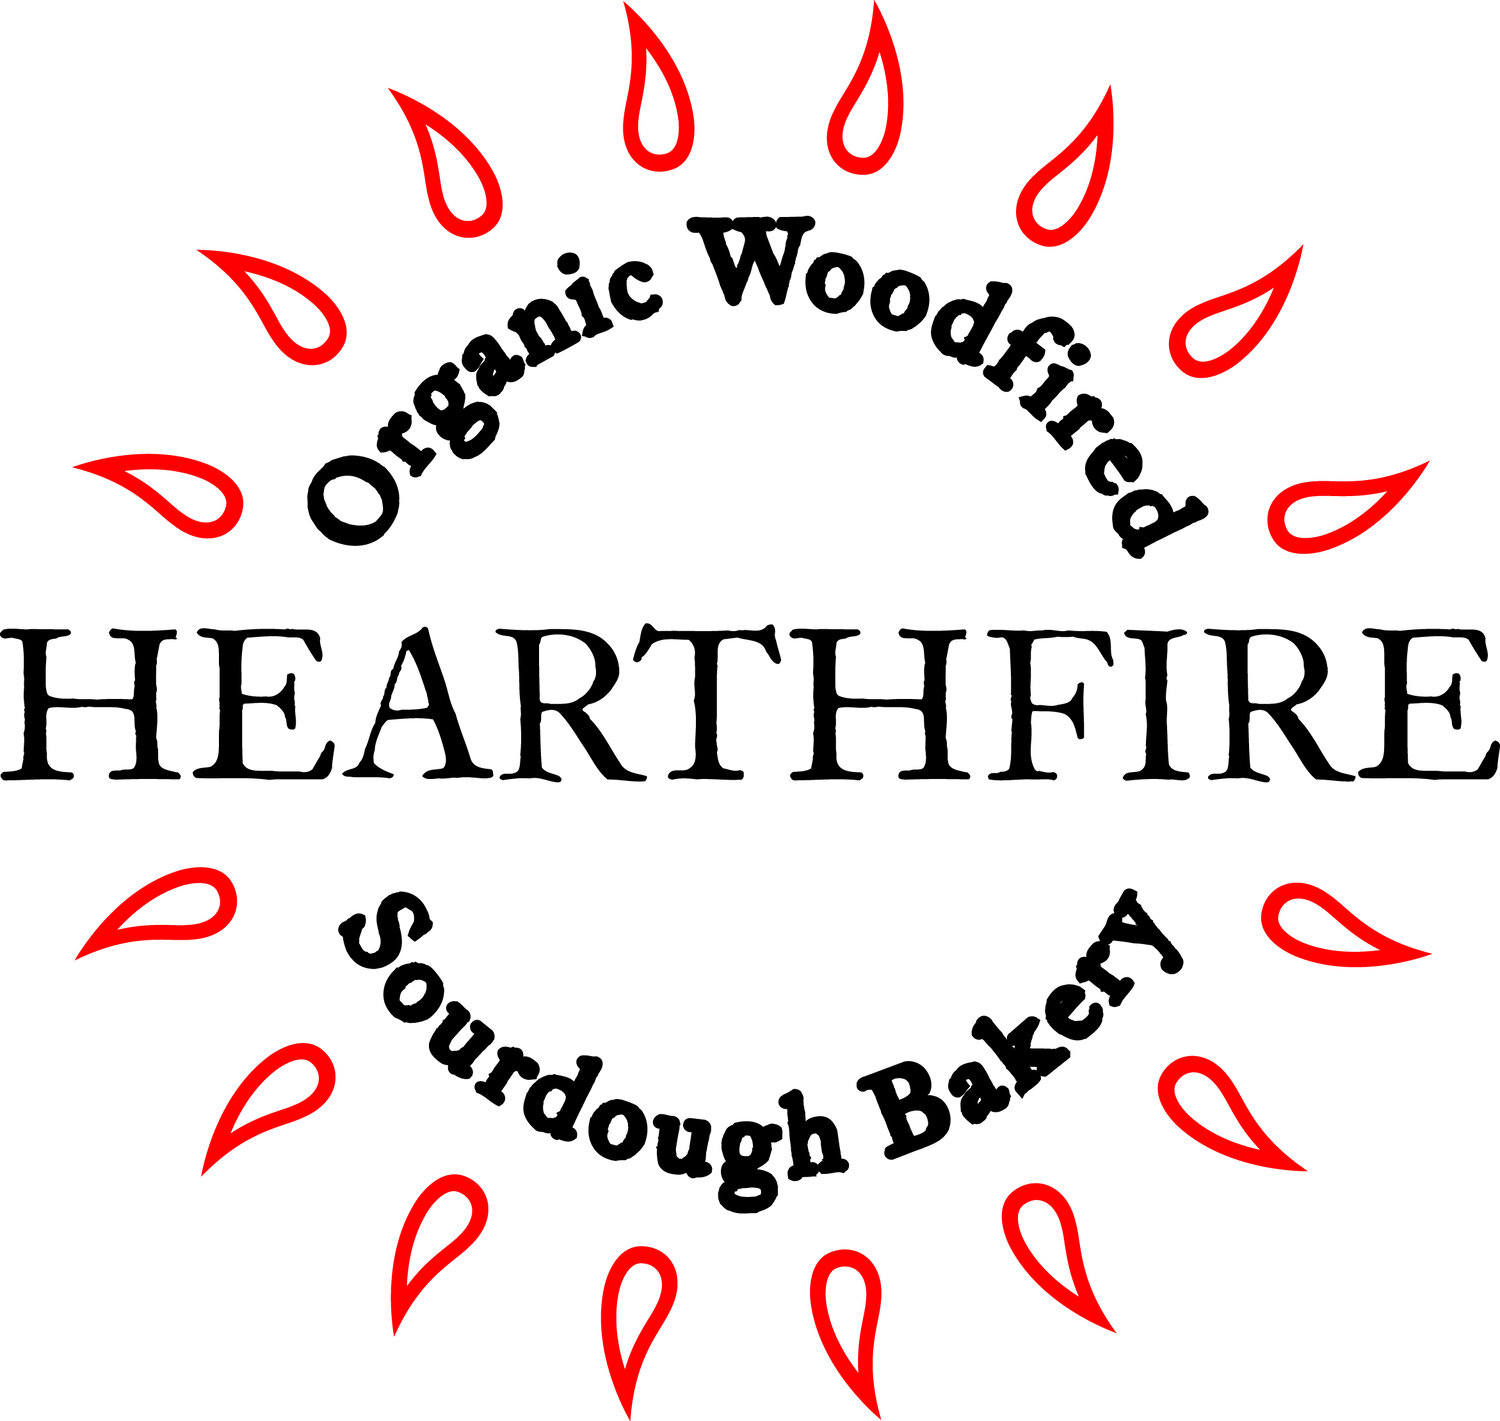 Hearthfire Bakery